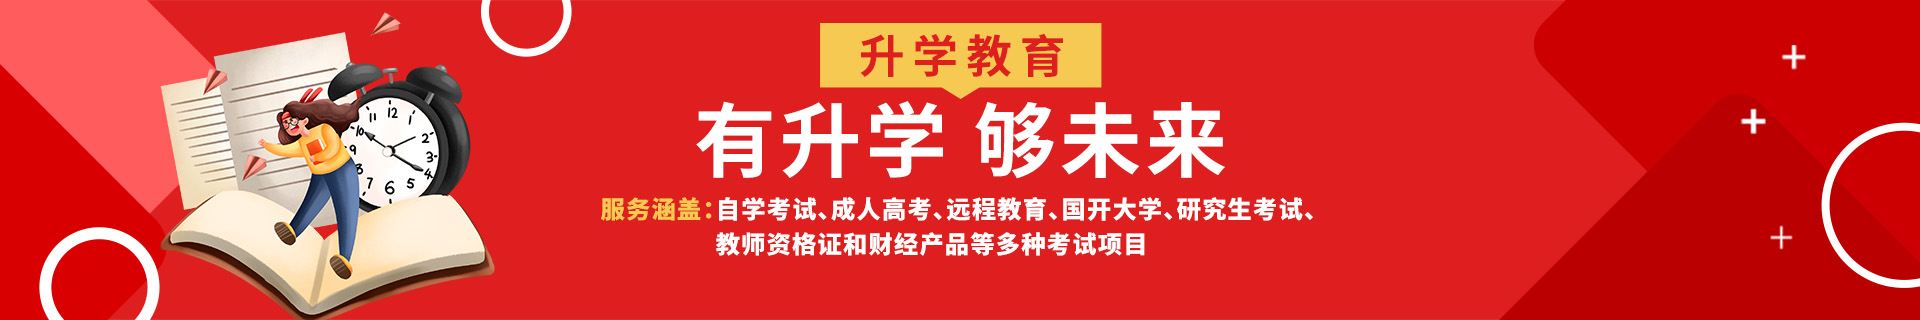 广州海珠区升学教育机构